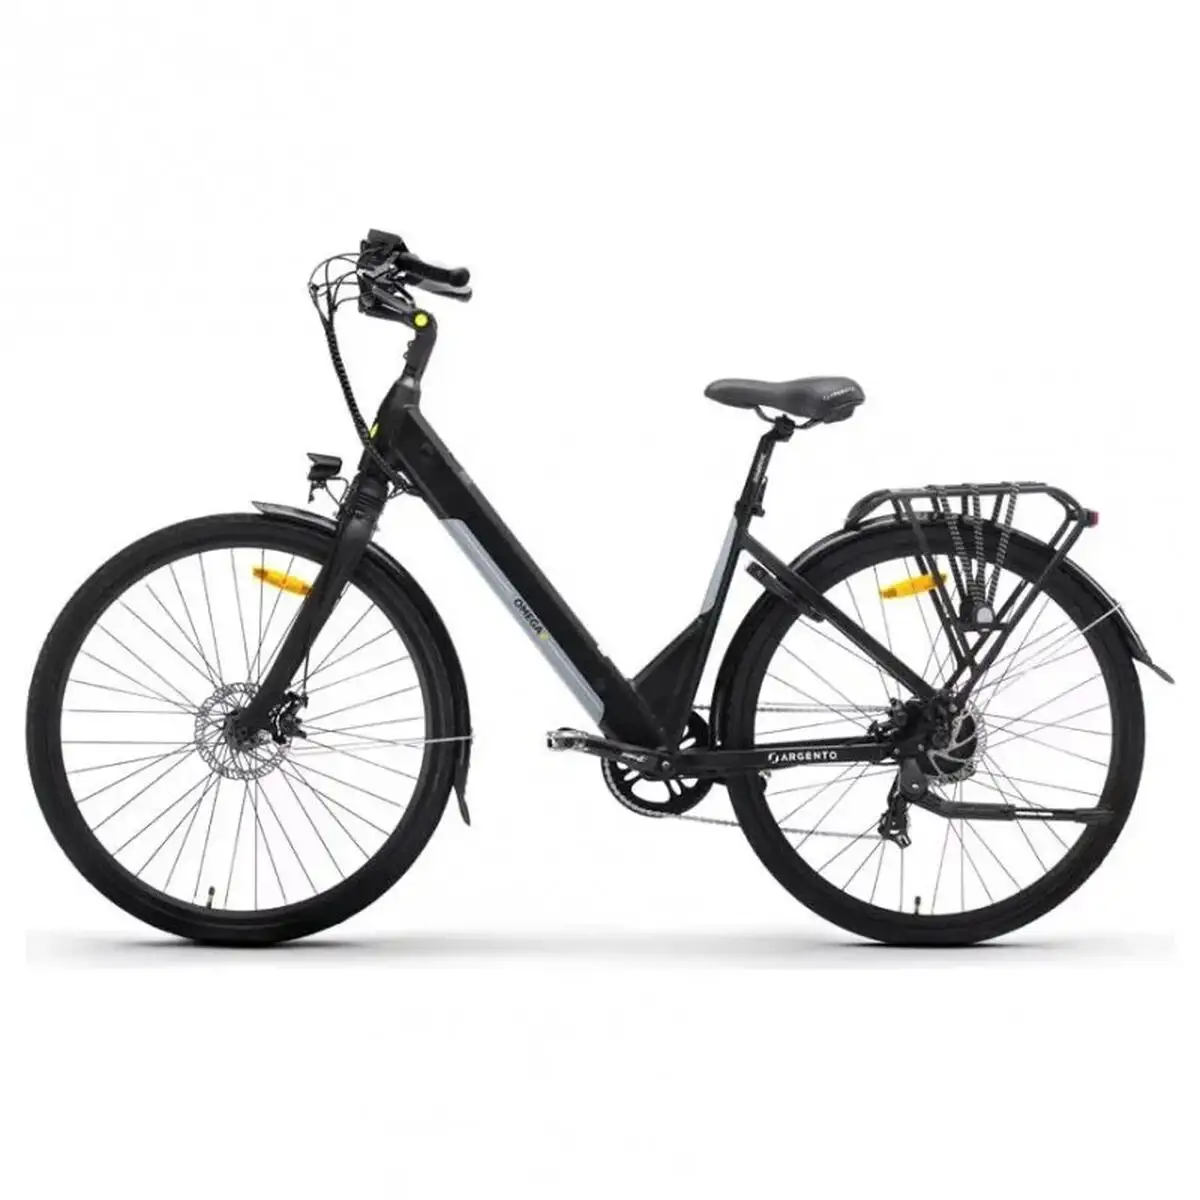 Velo electrique argento bike omega_plus01 27 5 25 km h_9030. Bienvenue chez DIAYTAR SENEGAL - Où le Shopping Rencontre la Qualité. Explorez notre sélection soigneusement conçue et trouvez des produits qui définissent le luxe abordable.